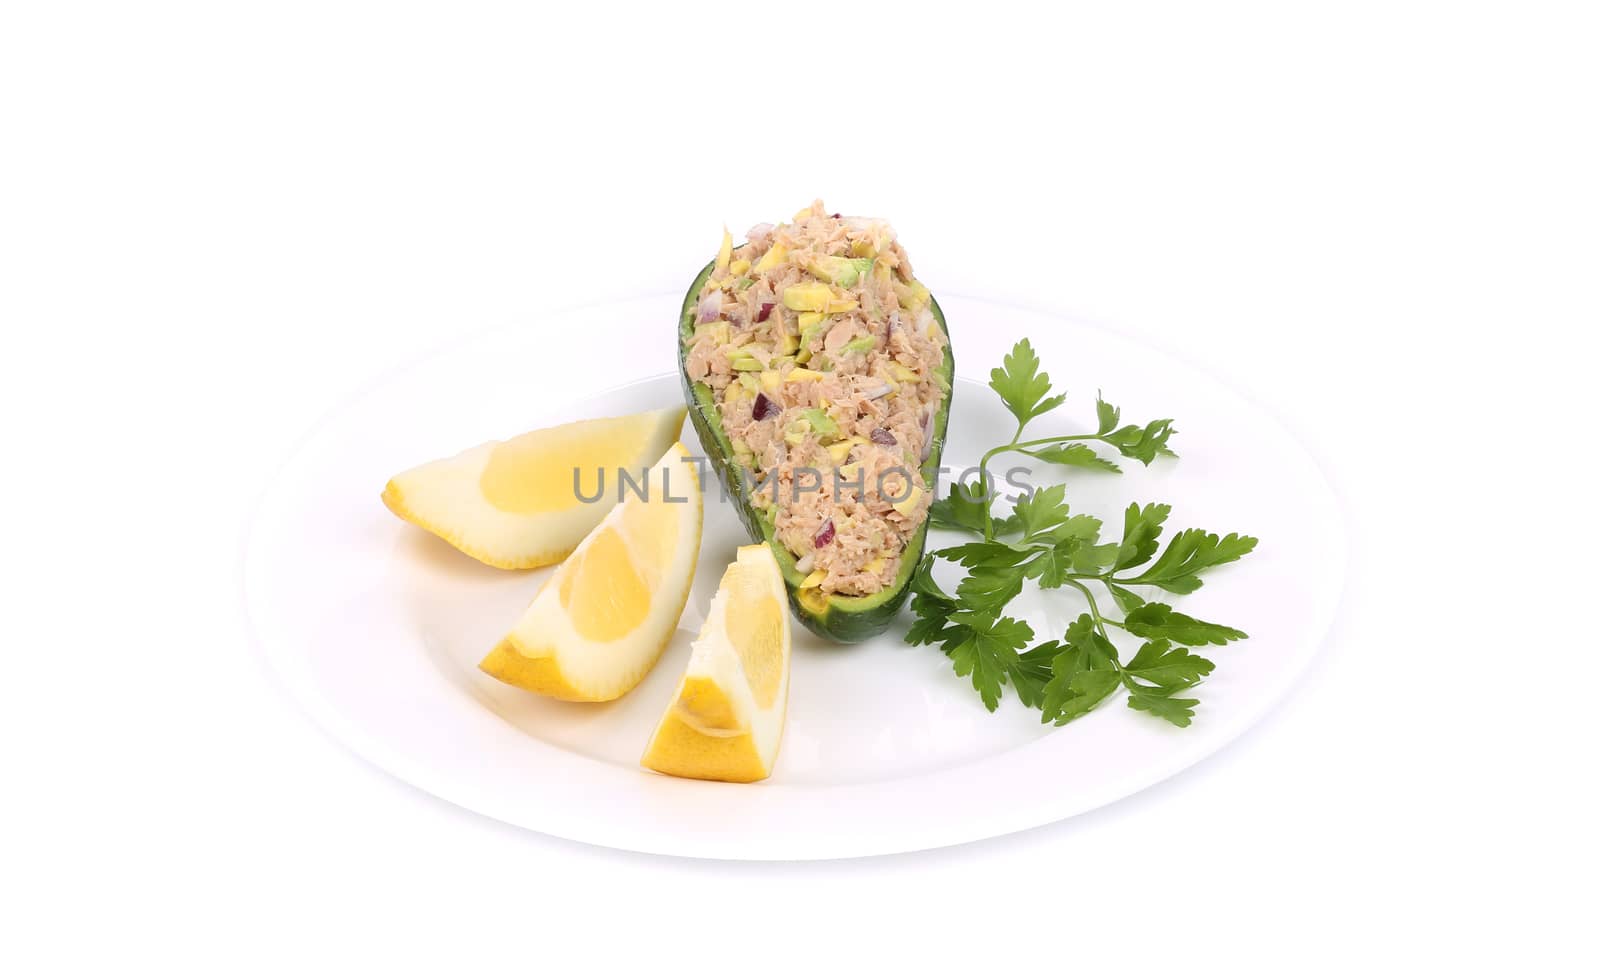 Avocado salad with tuna. by indigolotos